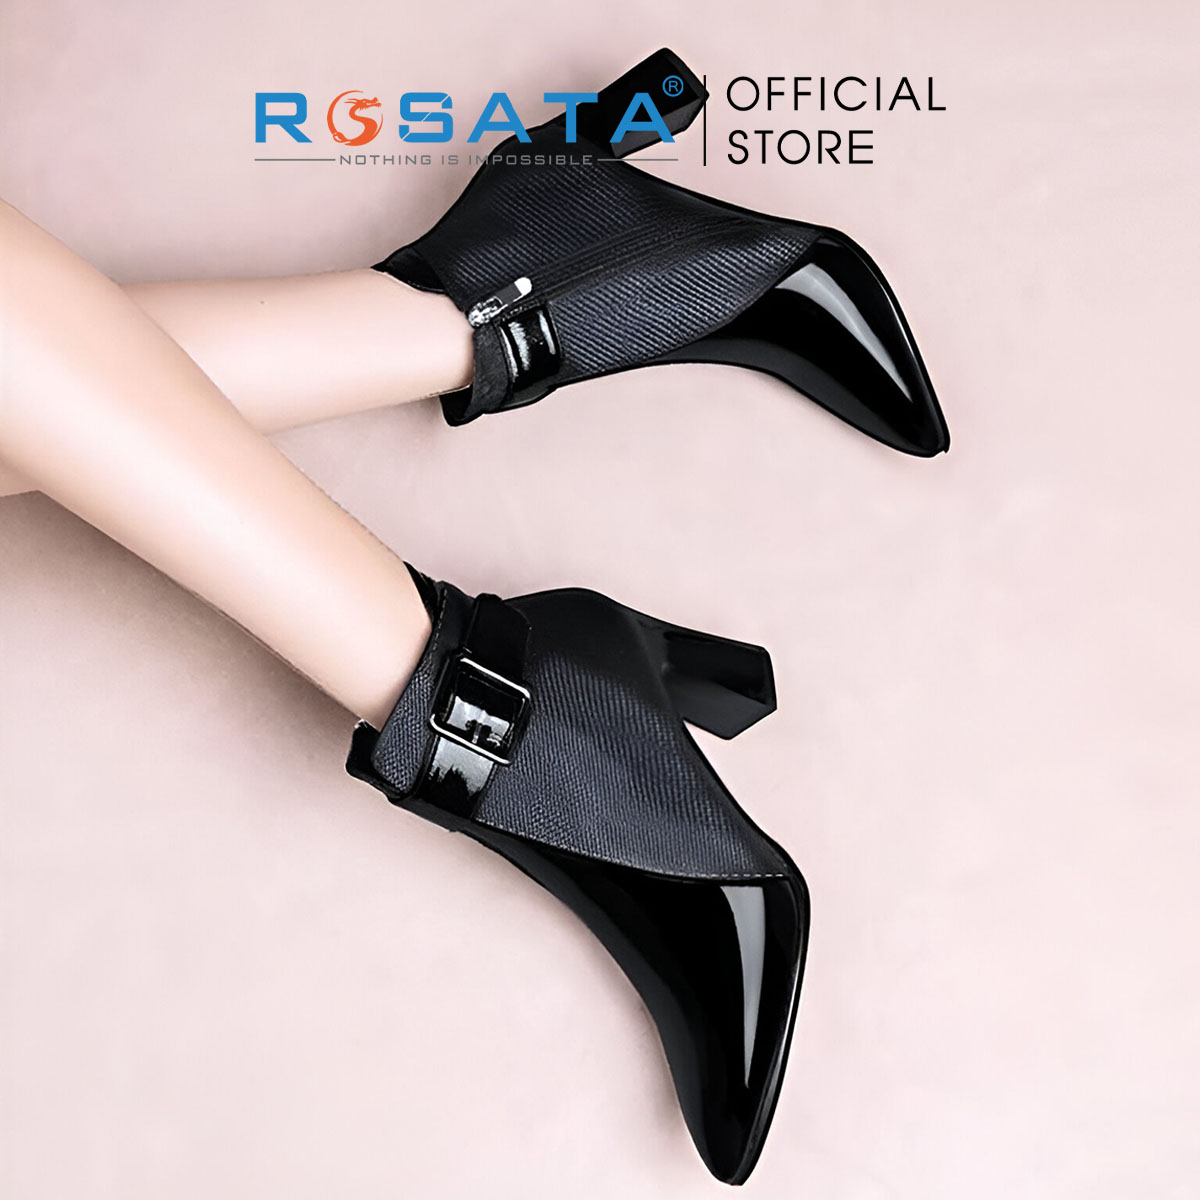 Boots thời trang nữ da bóng phối vân ROSATA RO603 - 8p - HÀNG VIỆT NAM - BKSTORE